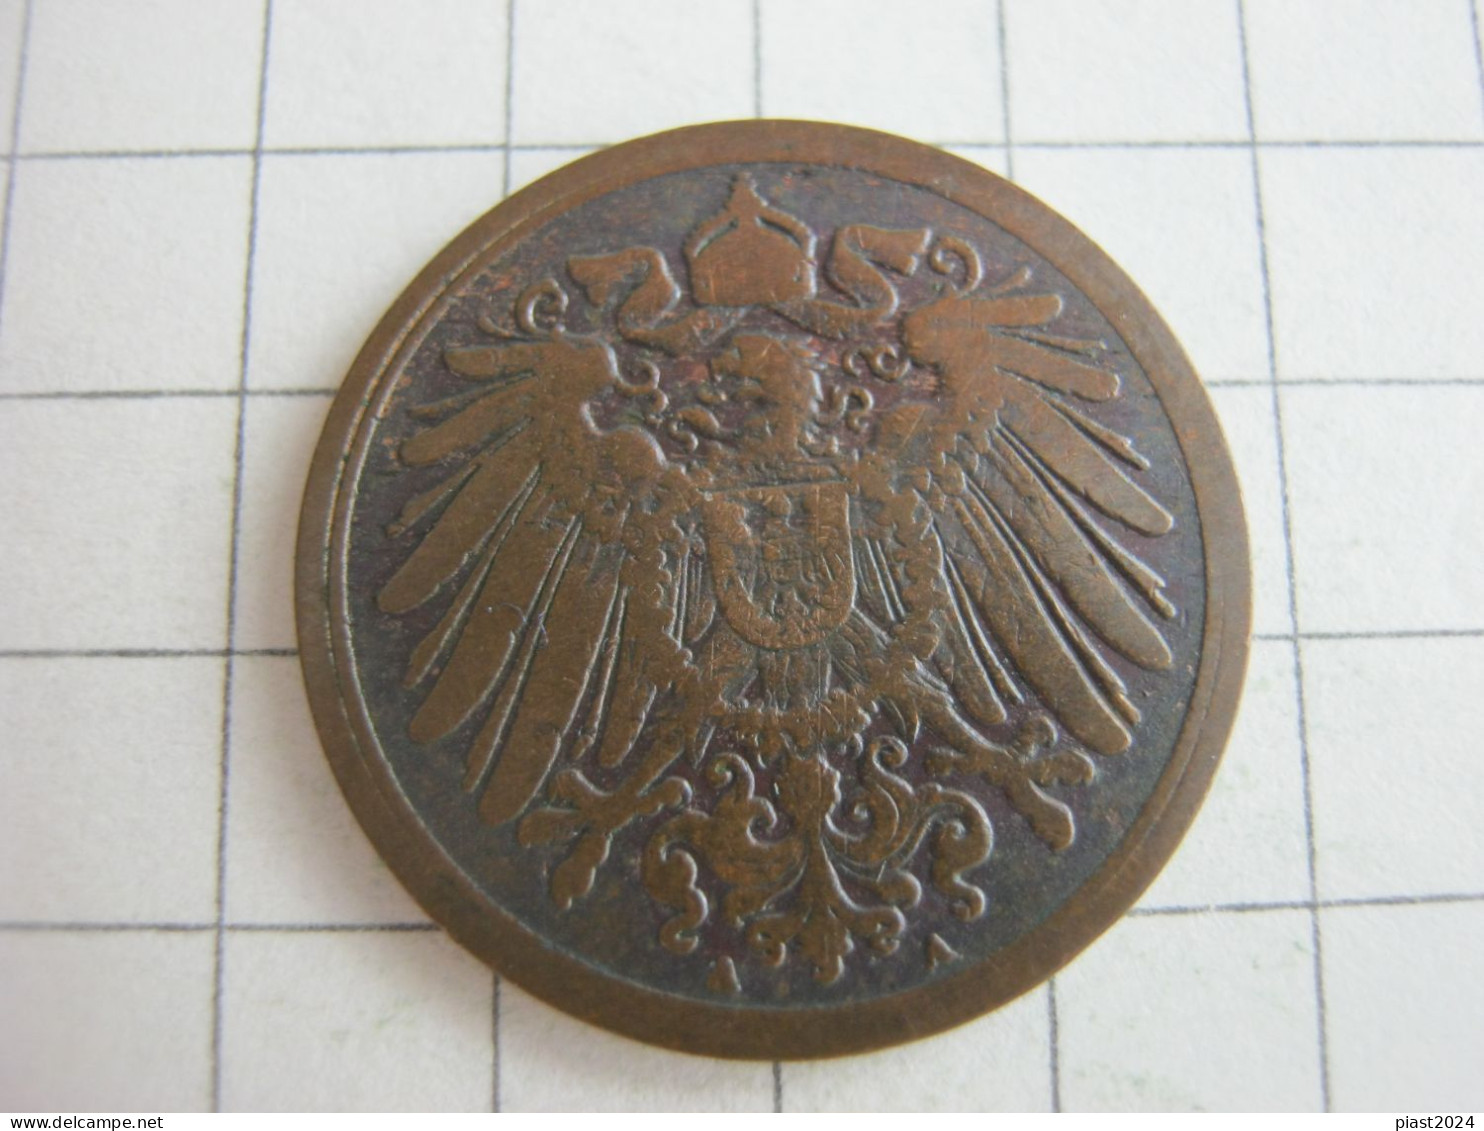 Germany 1 Pfennig 1897 A - 1 Pfennig